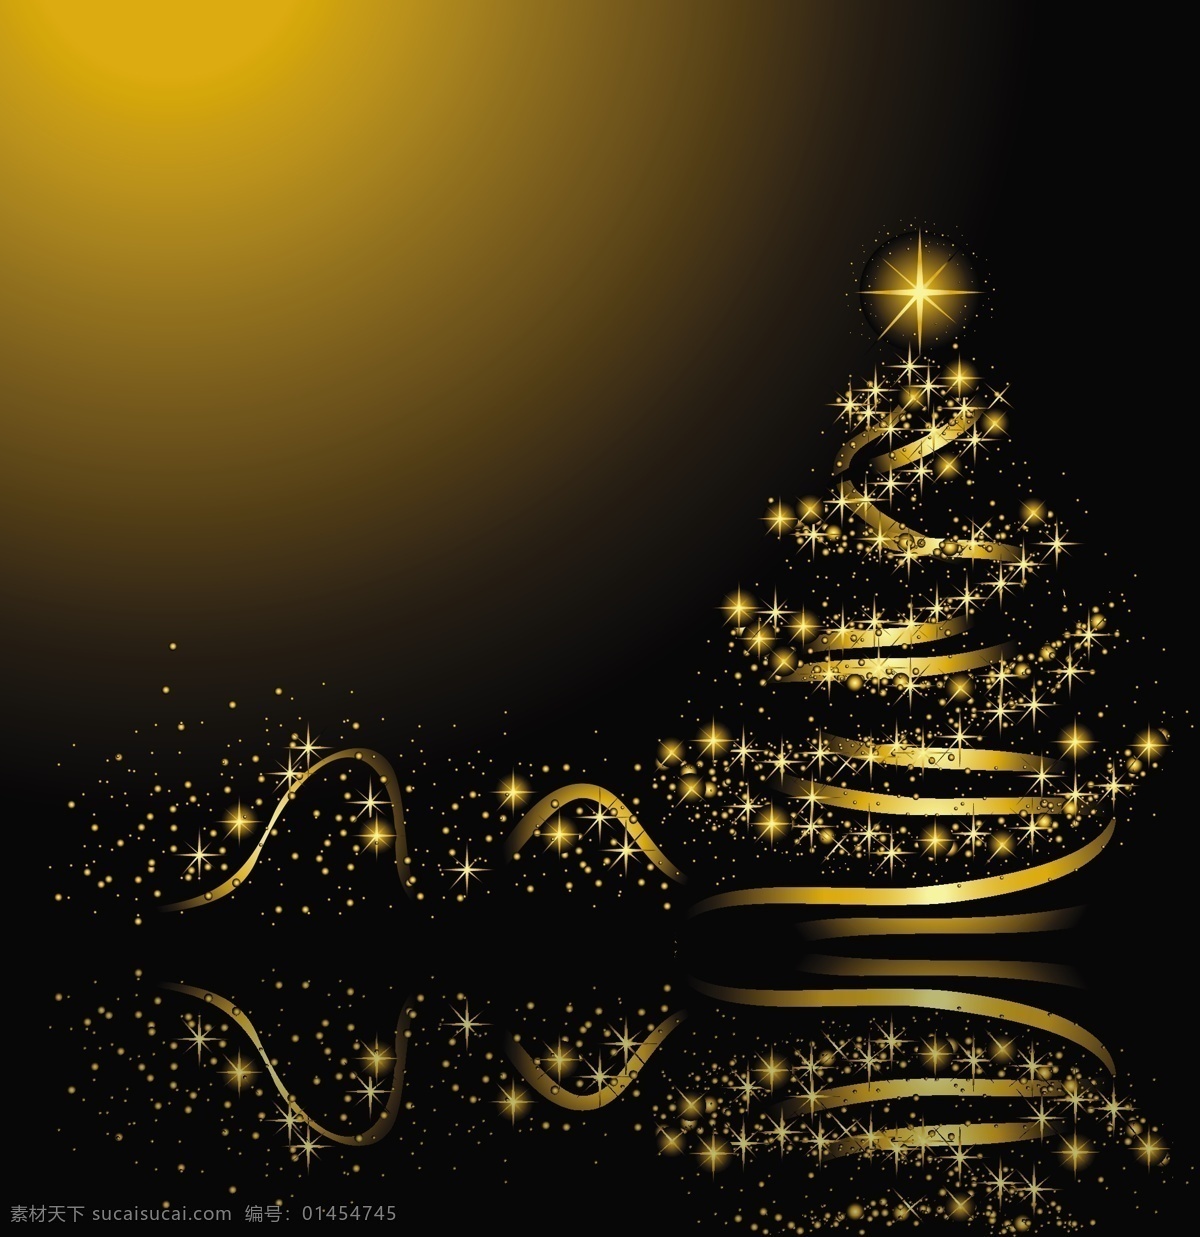 金色 圣诞树 背景 金色圣诞背景 圣诞树精美 璀璨圣诞树 闪亮灯光背景 倒影星星背景 节日新年圣诞 底纹边框 背景底纹 黑色